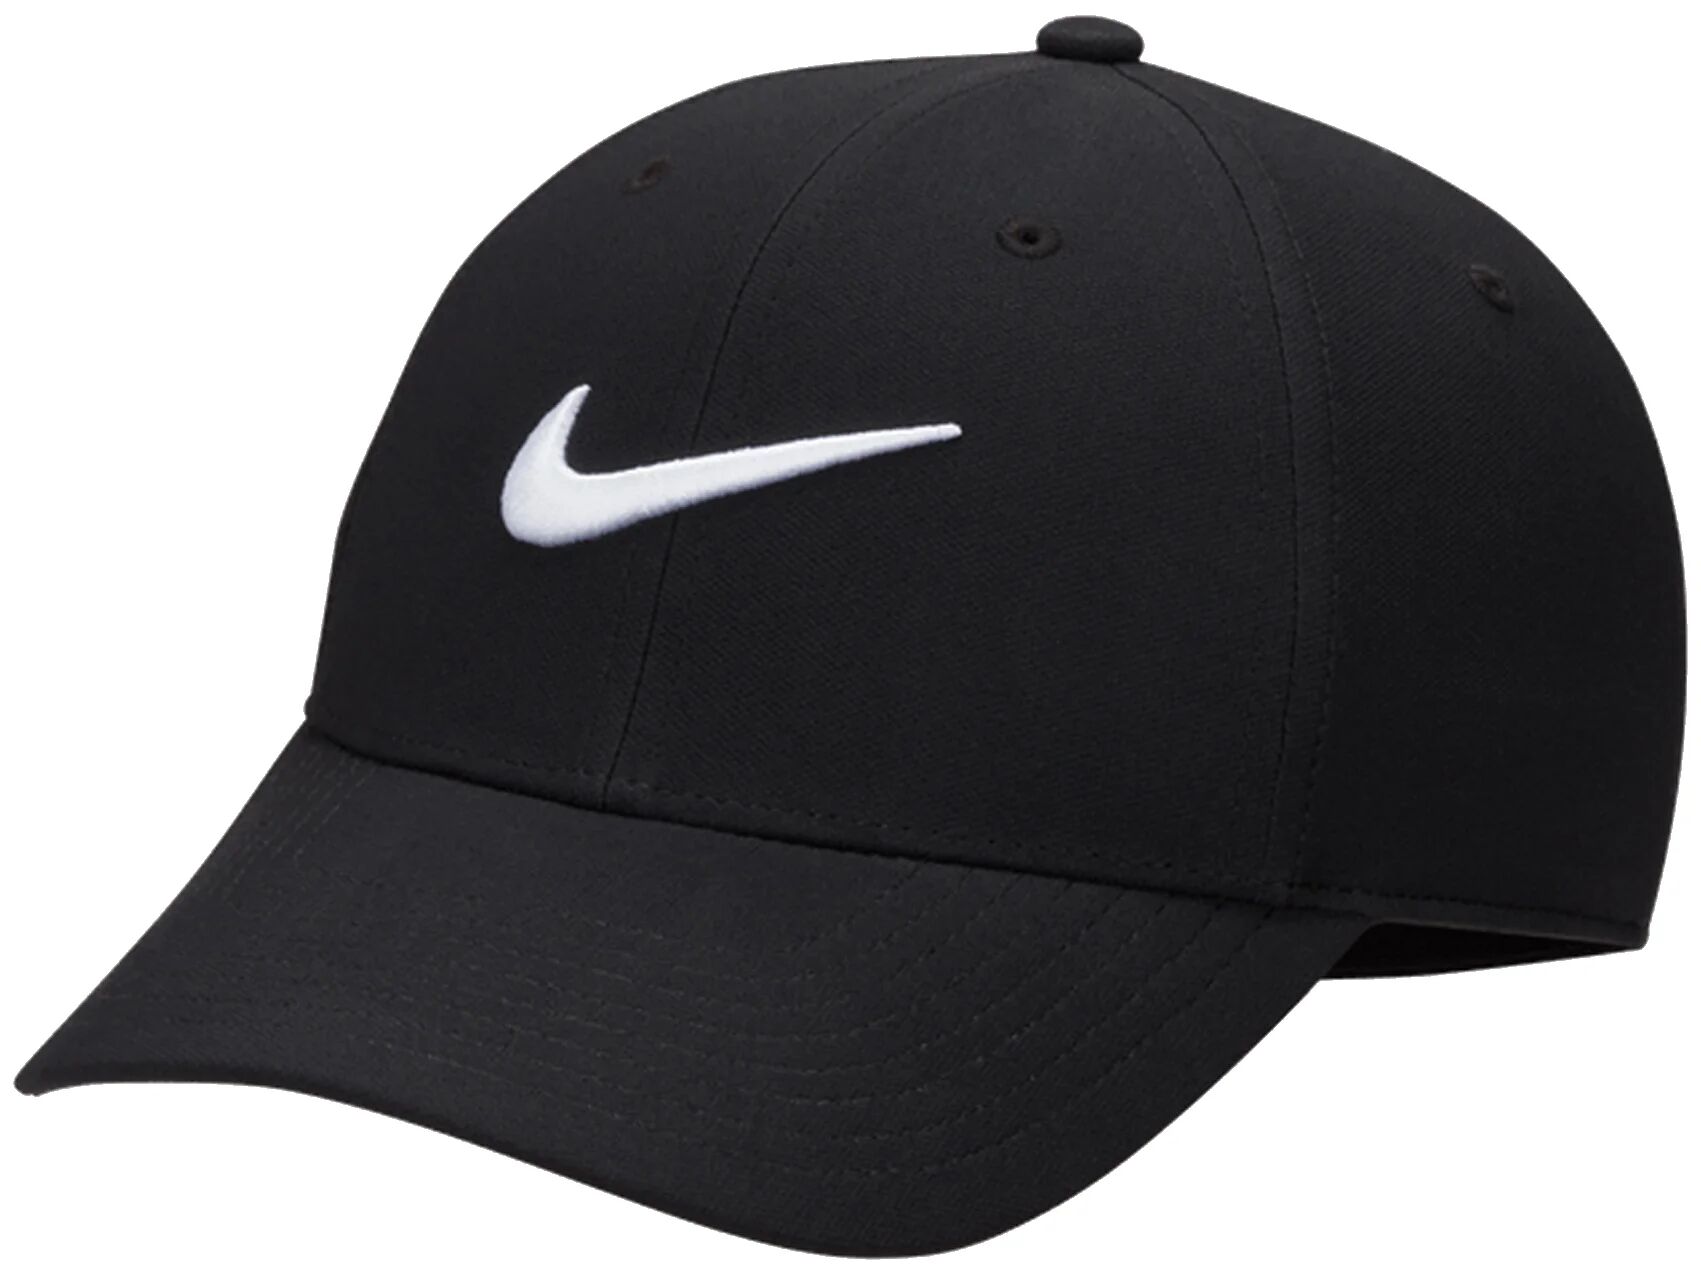 Nike Dri-FIT Club Structured Swoosh Men's Golf Hat - Black, Size: Small/Medium